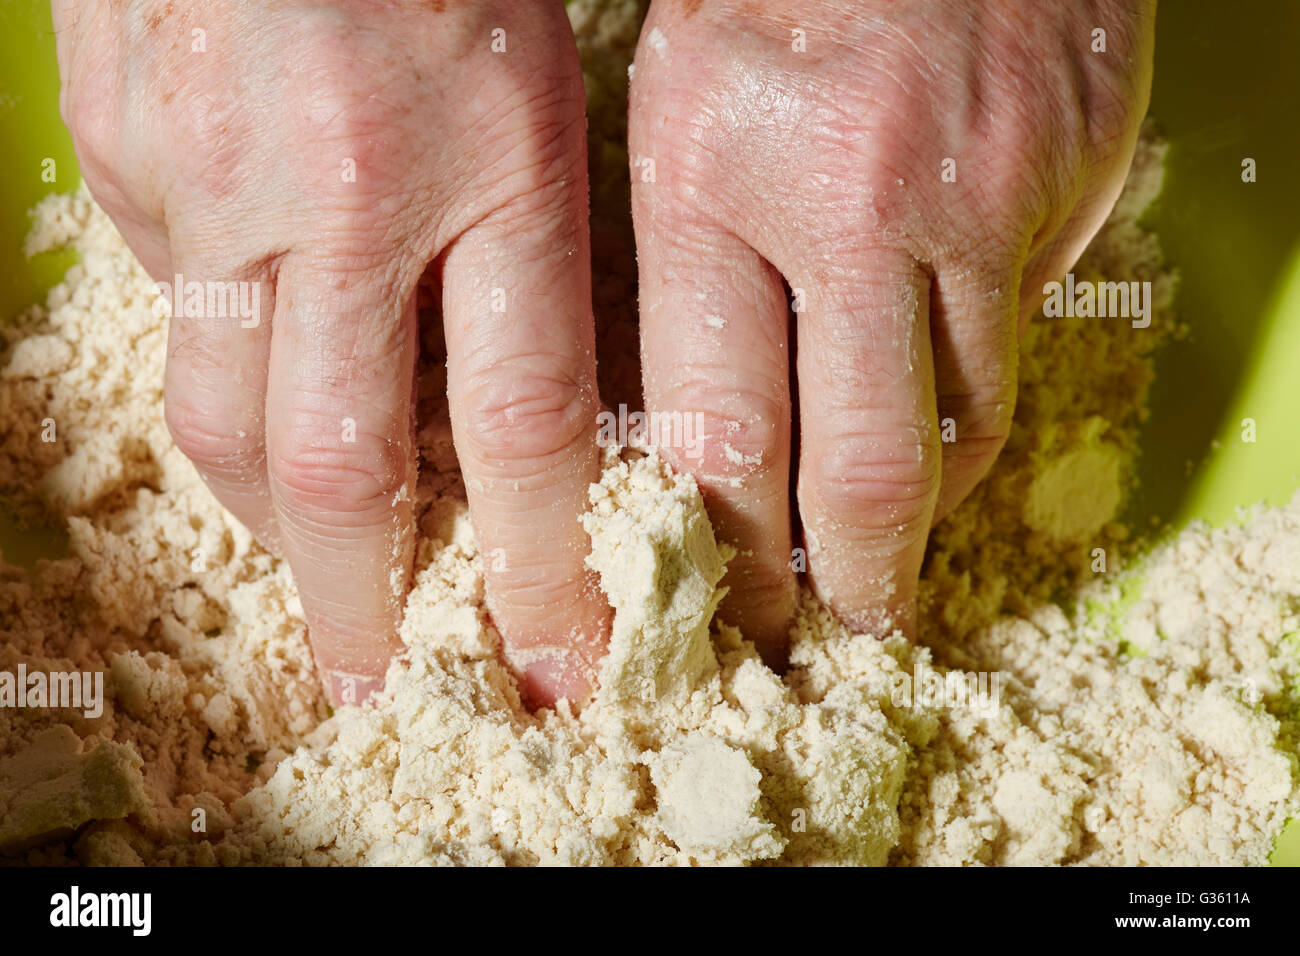 Hände des Mannes kneten einen Torte (oder pastös) Kruste Teig mit Mehl und Verkürzung Stockfoto